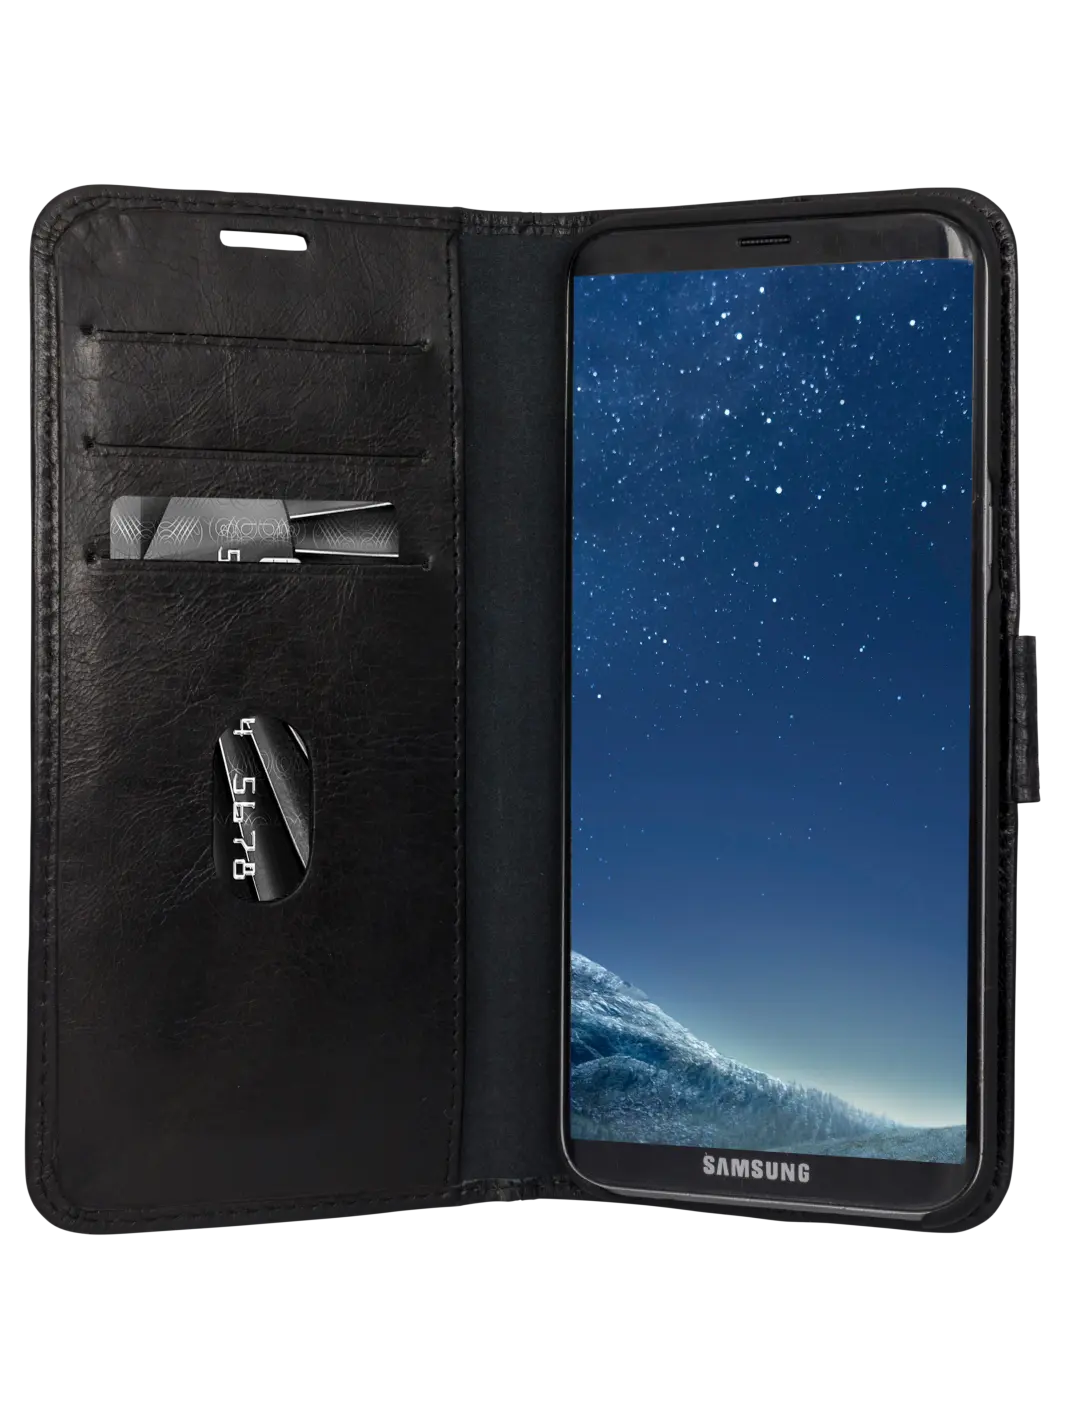 Copenhagen 1. Gen Black Galaxy S8+ Phone Cases